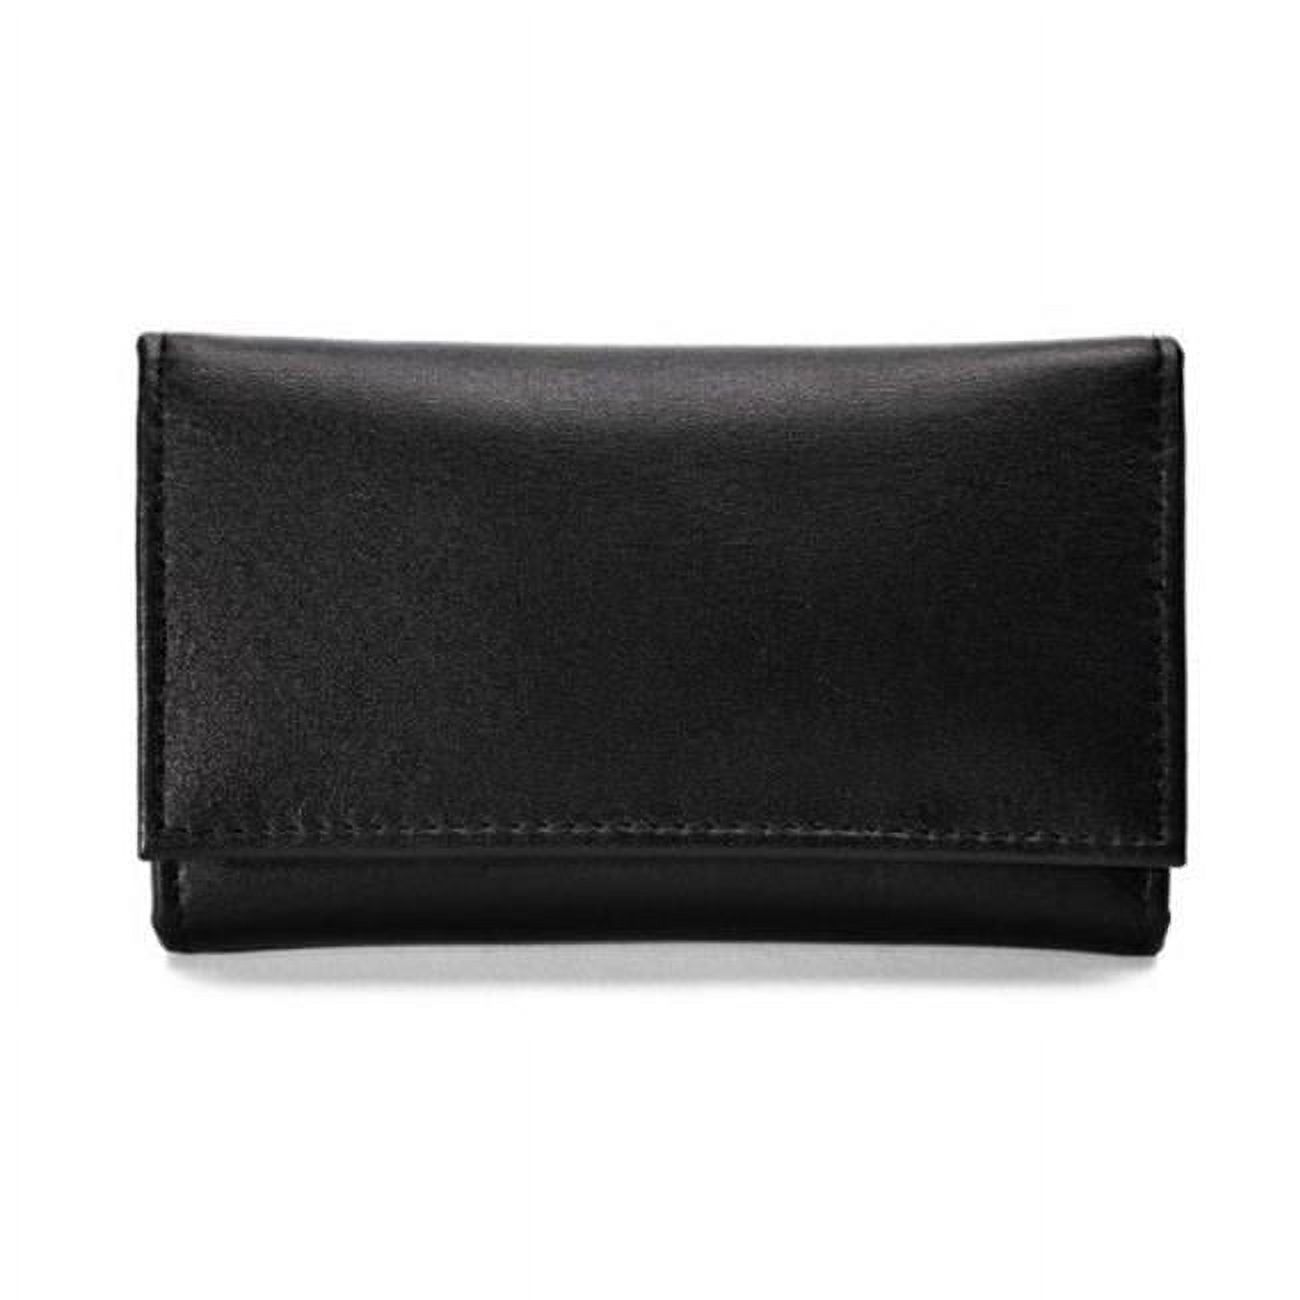 Winn Napa Leather Mini Tri-fold Key Case, Black - image 1 of 1